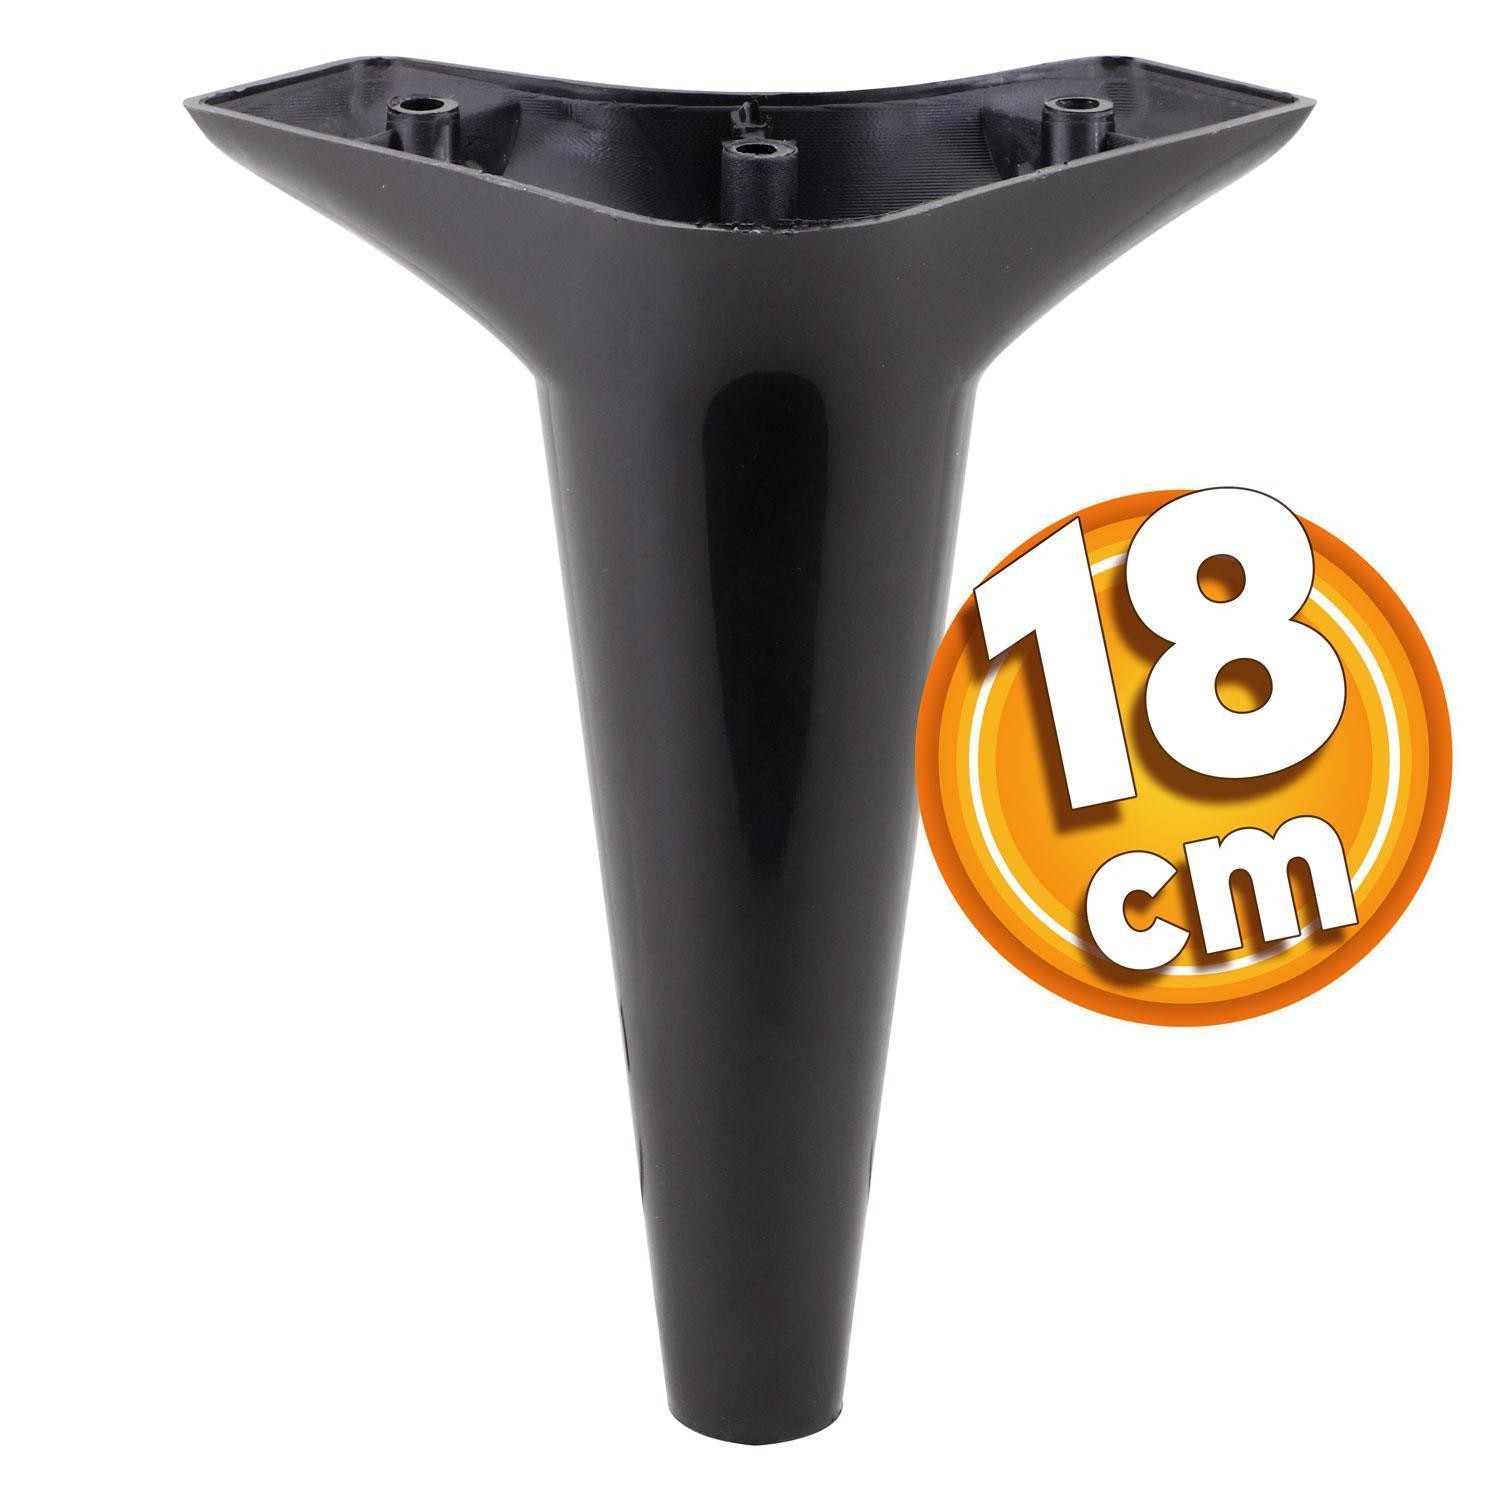 Aspen 6'lı Set Mobilya TV Ünitesi Çekyat Koltuk Kanepe Destek Ayağı 18 cm Siyah Baza Ayak M8 Destek